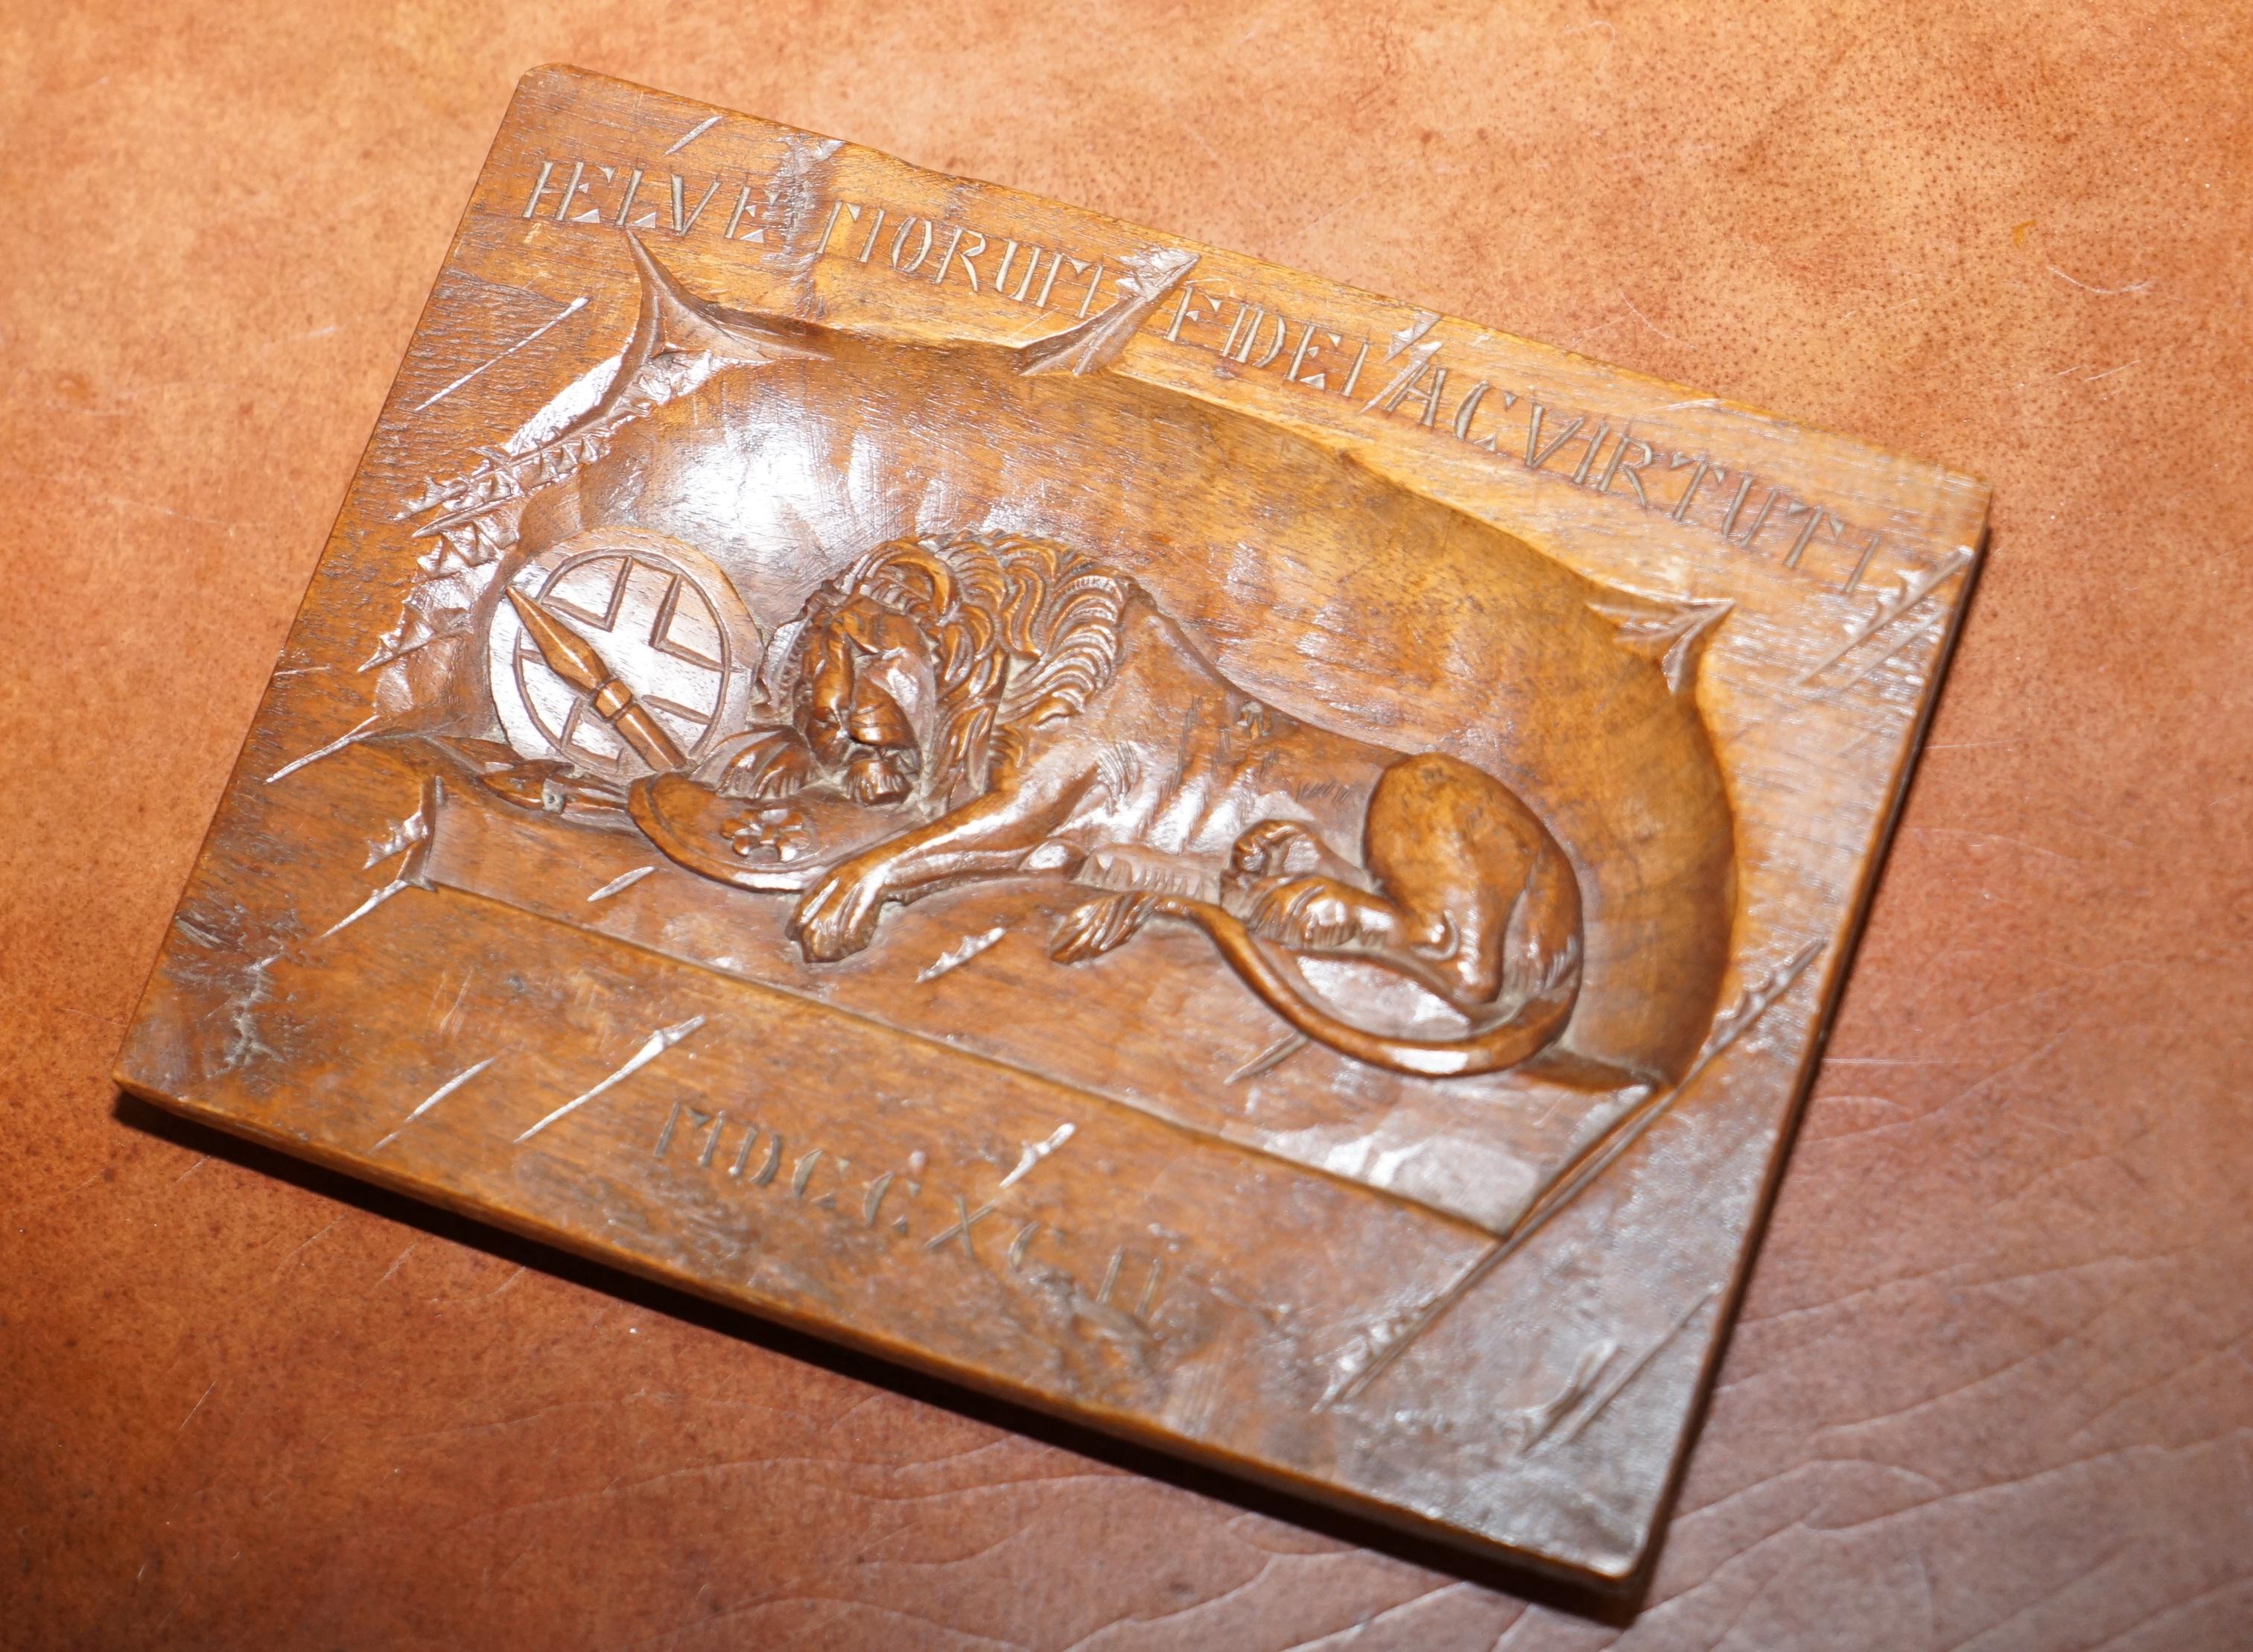 Wir freuen uns, diese schöne handgeschnitzte Wandtafel mit dem Löwen von Luzern und Dokumentation zum Verkauf anzubieten.

Eine sehr gut aussehende und gut gemachte Stück, kommt es komplett mit einigen Zeitungsausschnitten zu erklären, was das ist